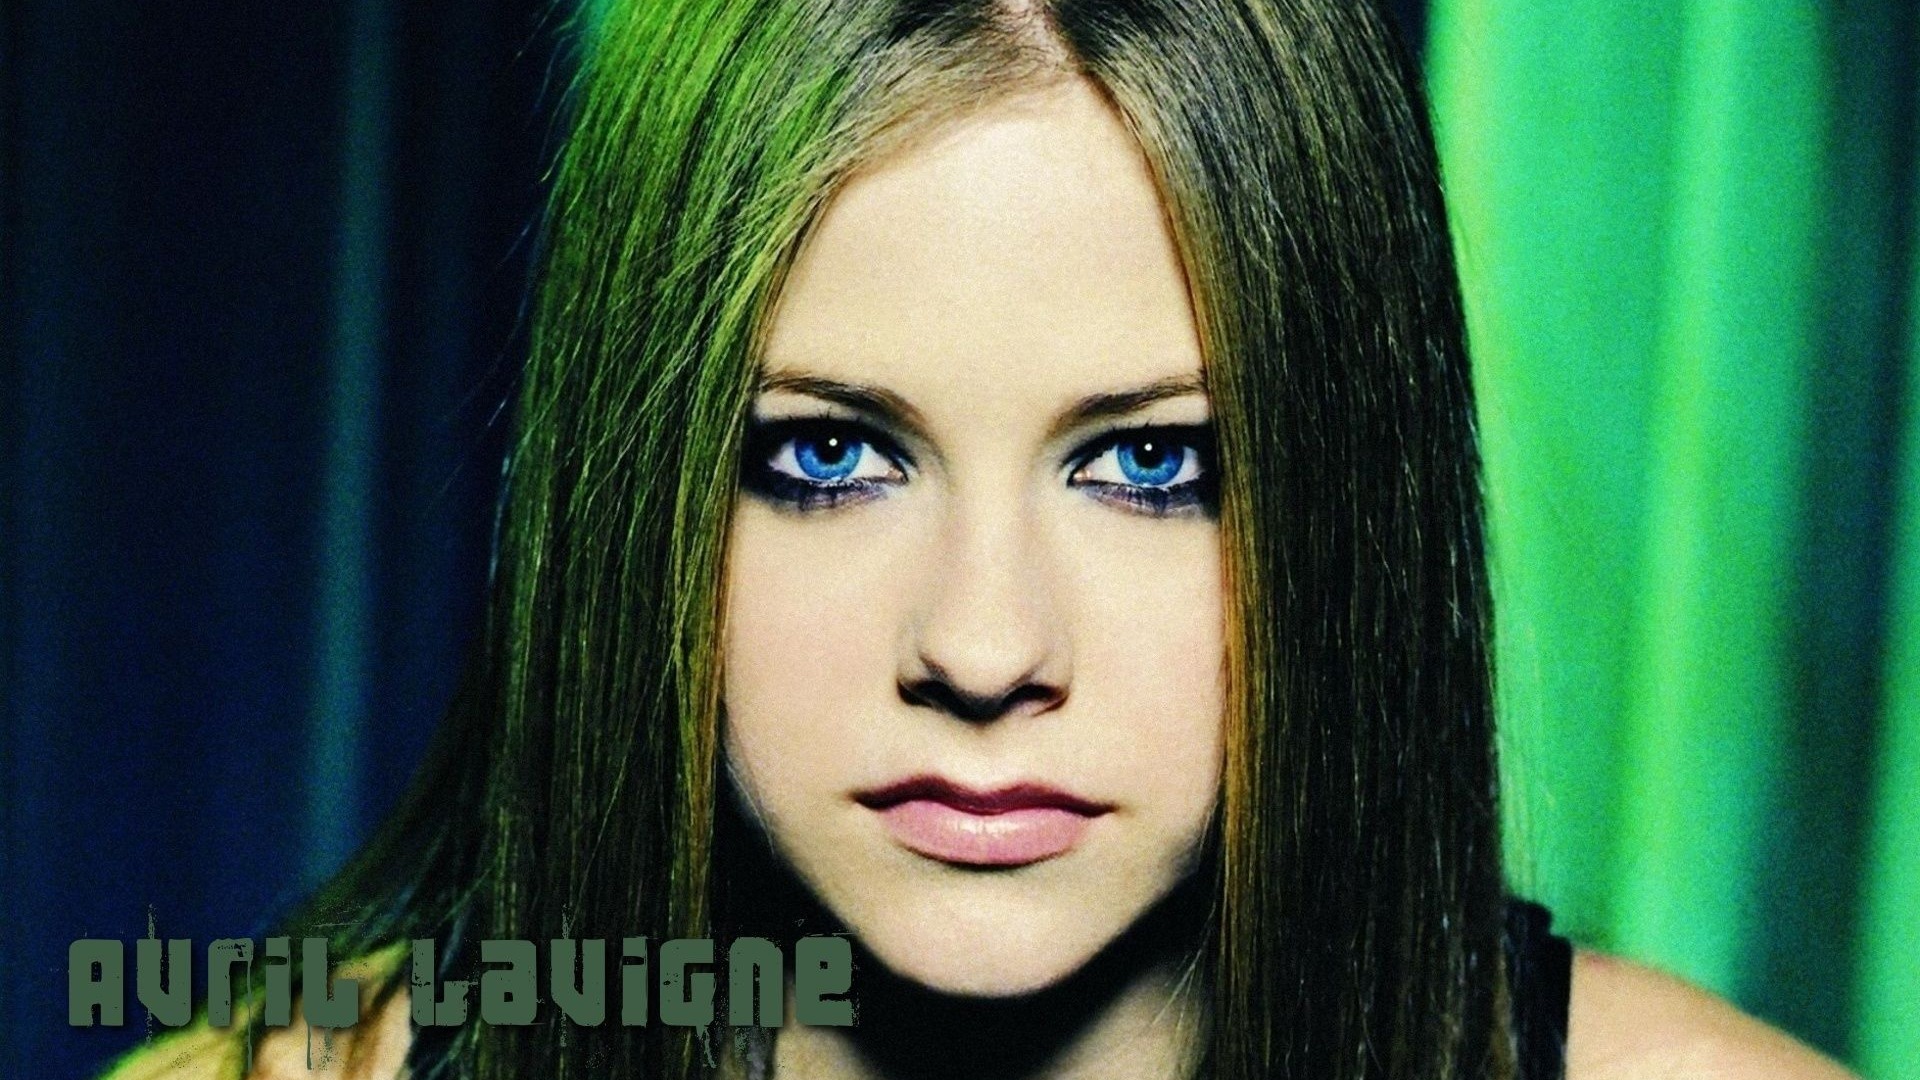 Avril Lavigne 艾薇儿·拉维妮 美女壁纸22 - 1920x1080